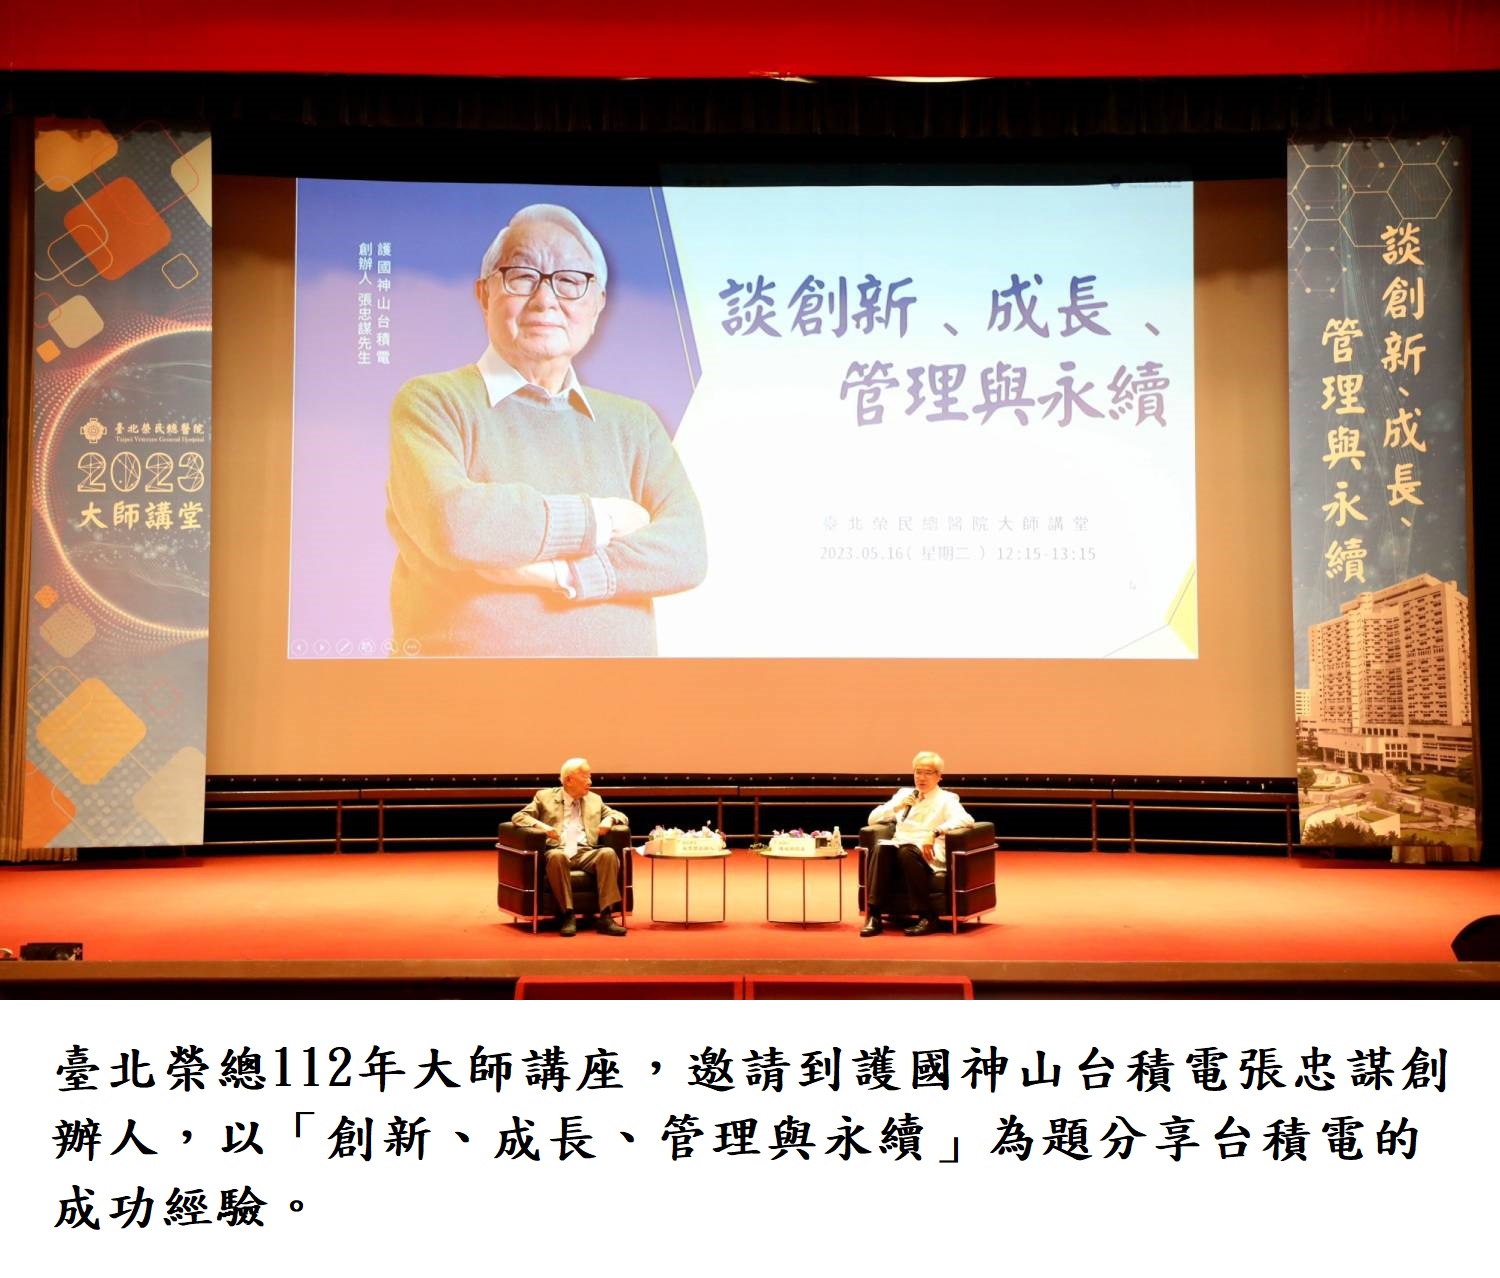 臺北榮總112年大師講座，邀請到護國神山台積電張忠謀創辦人，以「創新、成長、管理與永續」為題分享台積電的成功經驗。